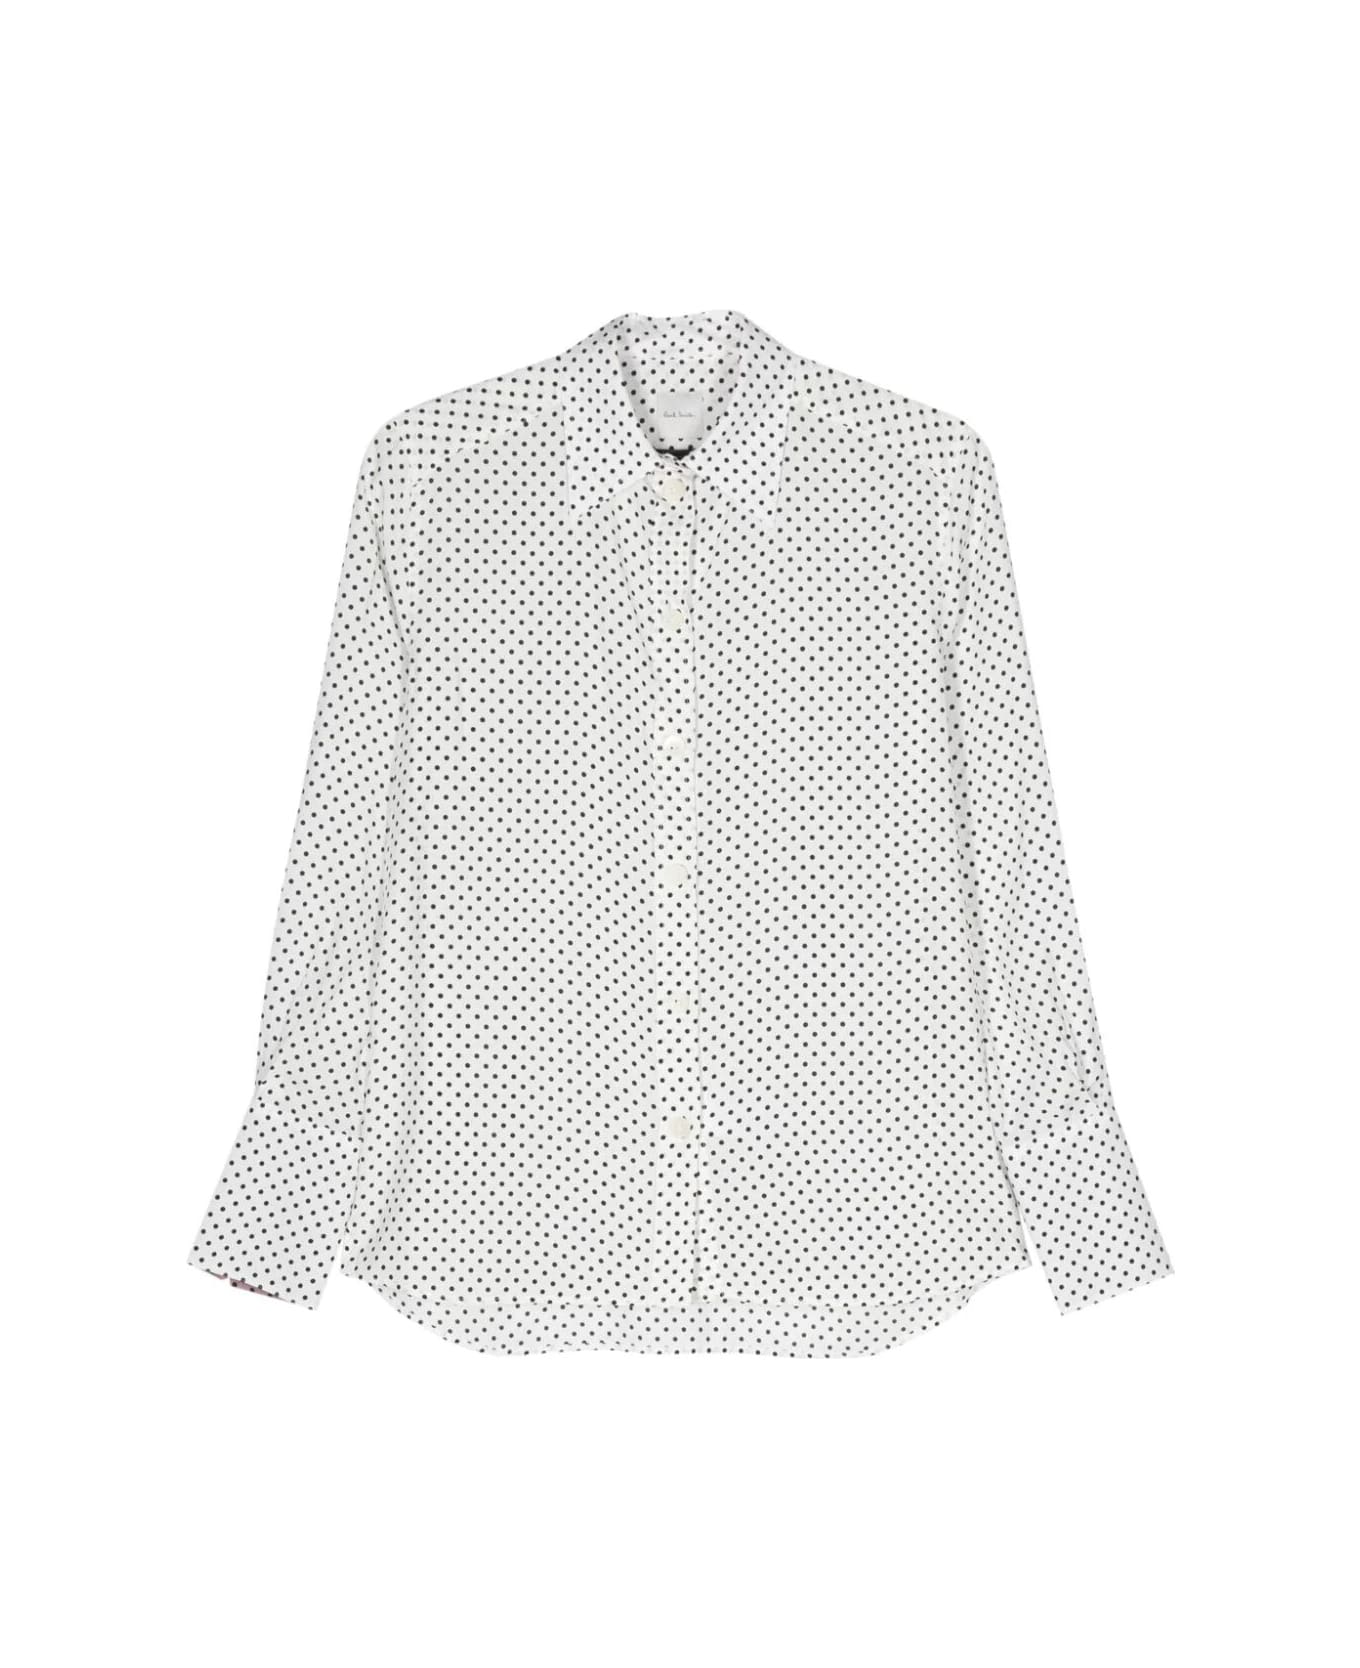 Paul Smith Pois Shirt - White シャツ